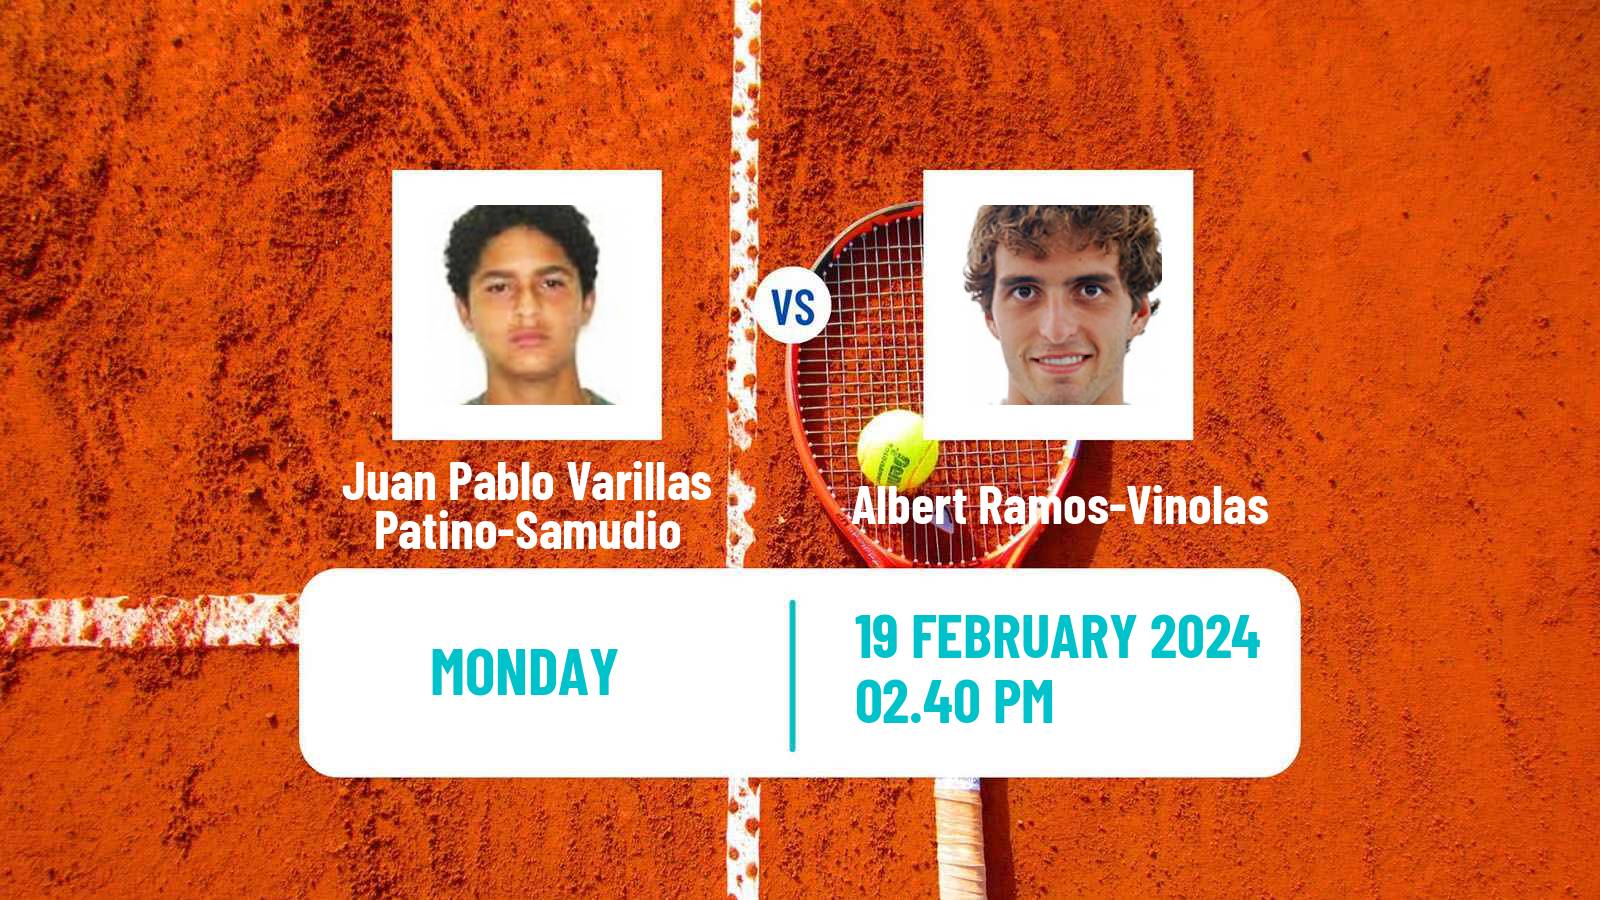 Tennis ATP Rio de Janeiro Juan Pablo Varillas Patino-Samudio - Albert Ramos-Vinolas